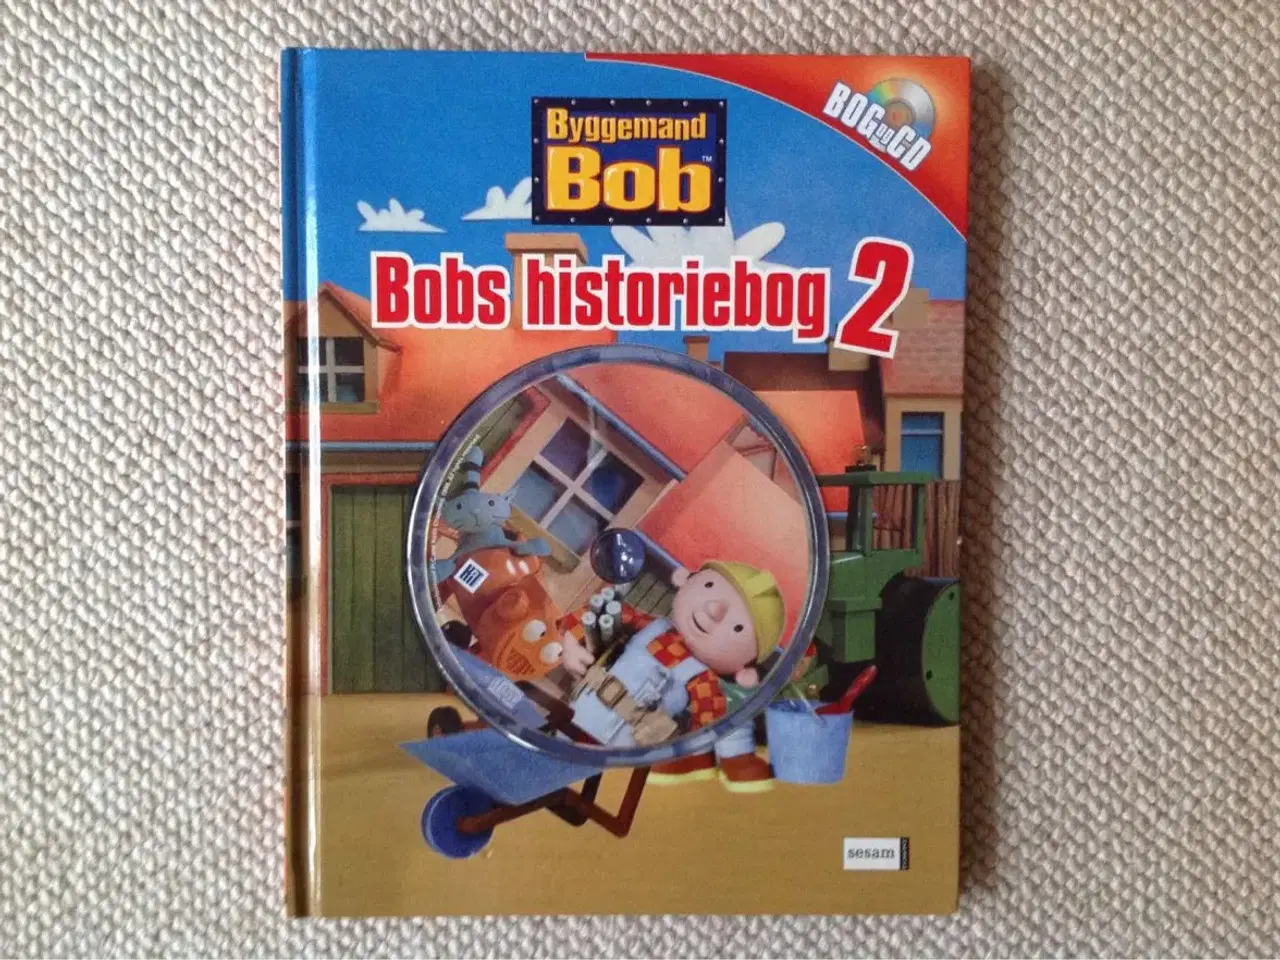 Billede 1 - Bobs historiebog 2 incl. CD